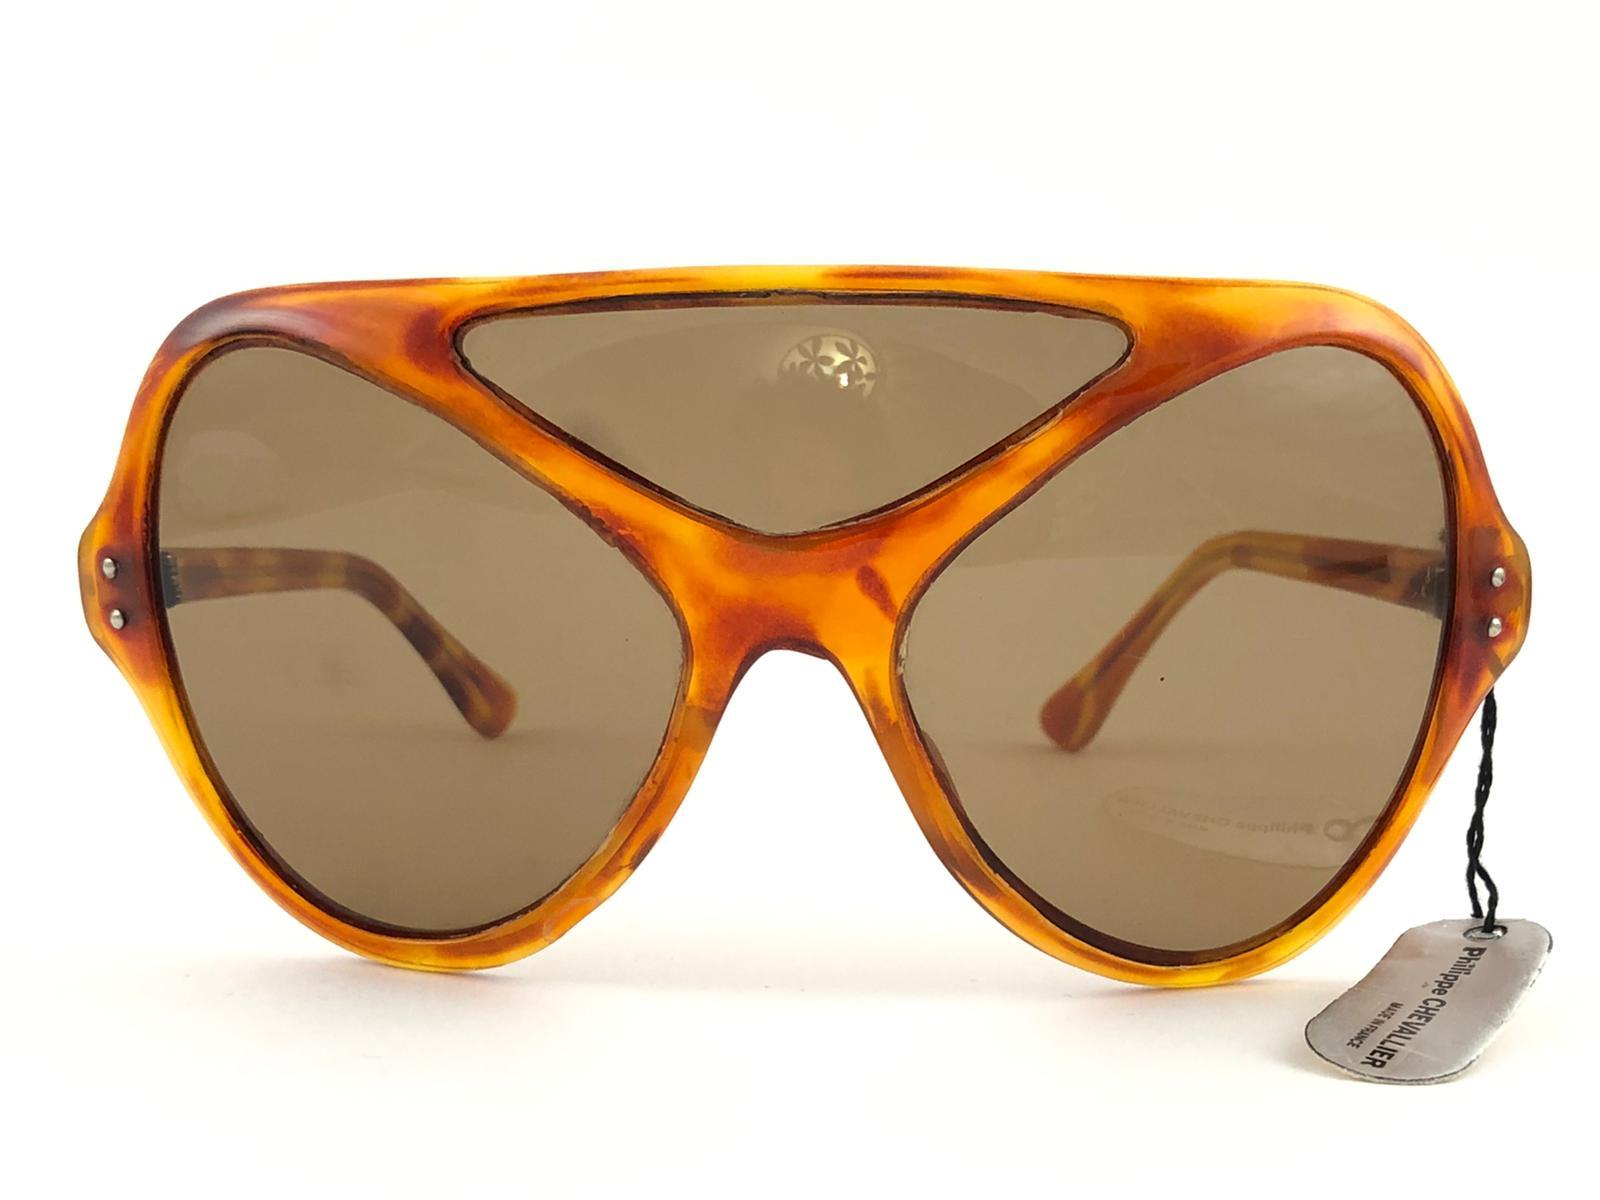 Nouvelles lunettes de soleil vintage Philippe Chevalier, pièce de collection rare, de taille surdimensionnée en écaille de tortue légère, avec trois verres marron moyen sans tache. De la même série que ceux portés par Miles Davis.
Une superbe